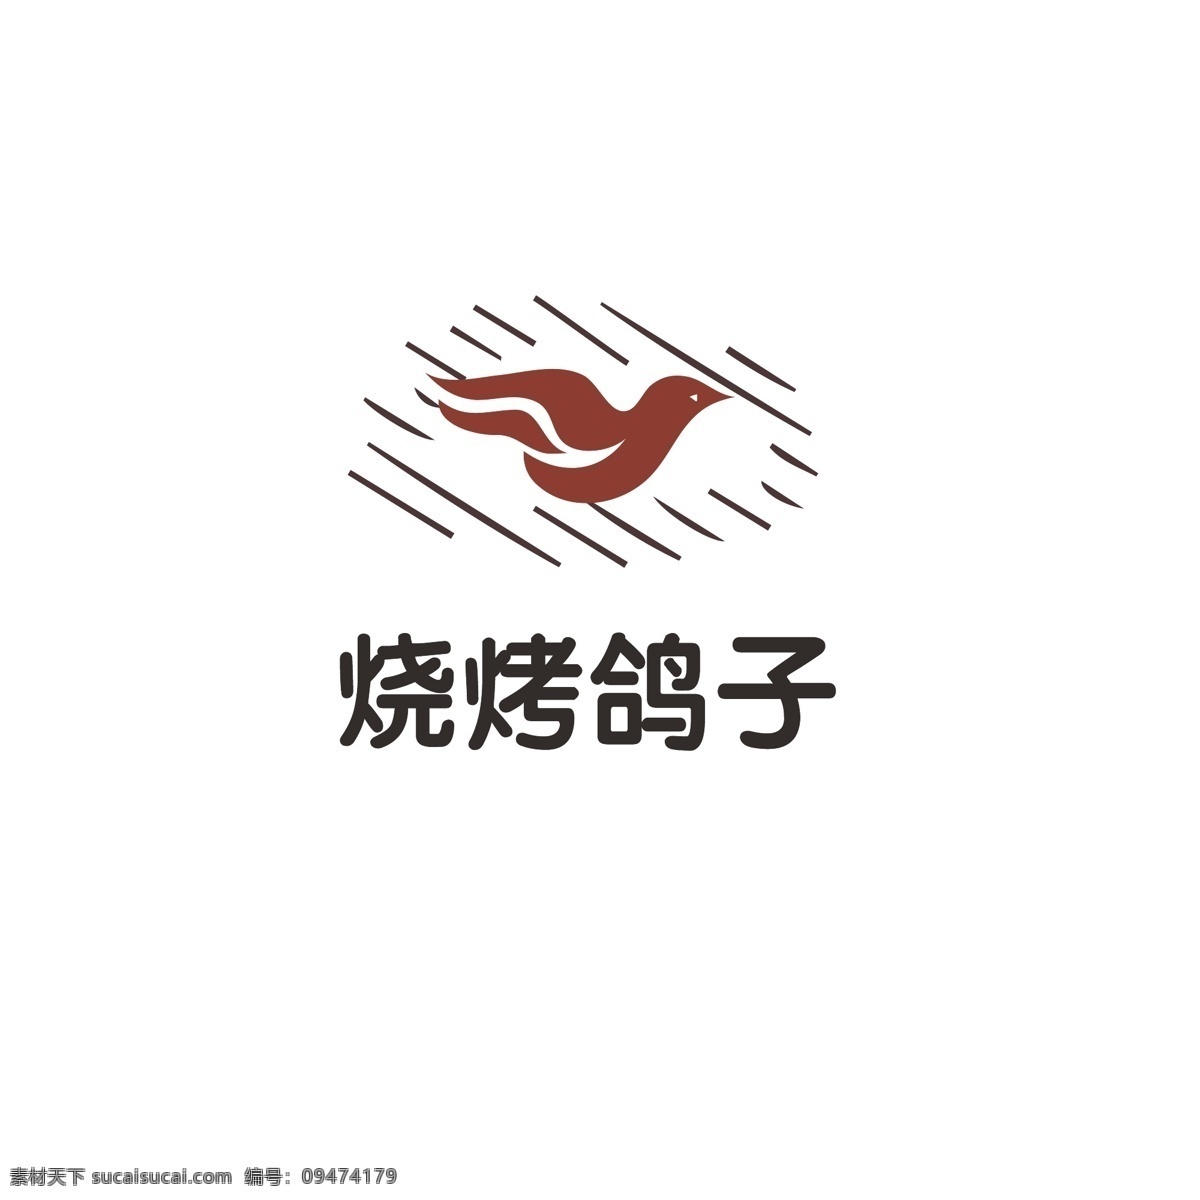 烧烤 饭店 logo 简约 鸽子 飞鸟 饭馆 大排档